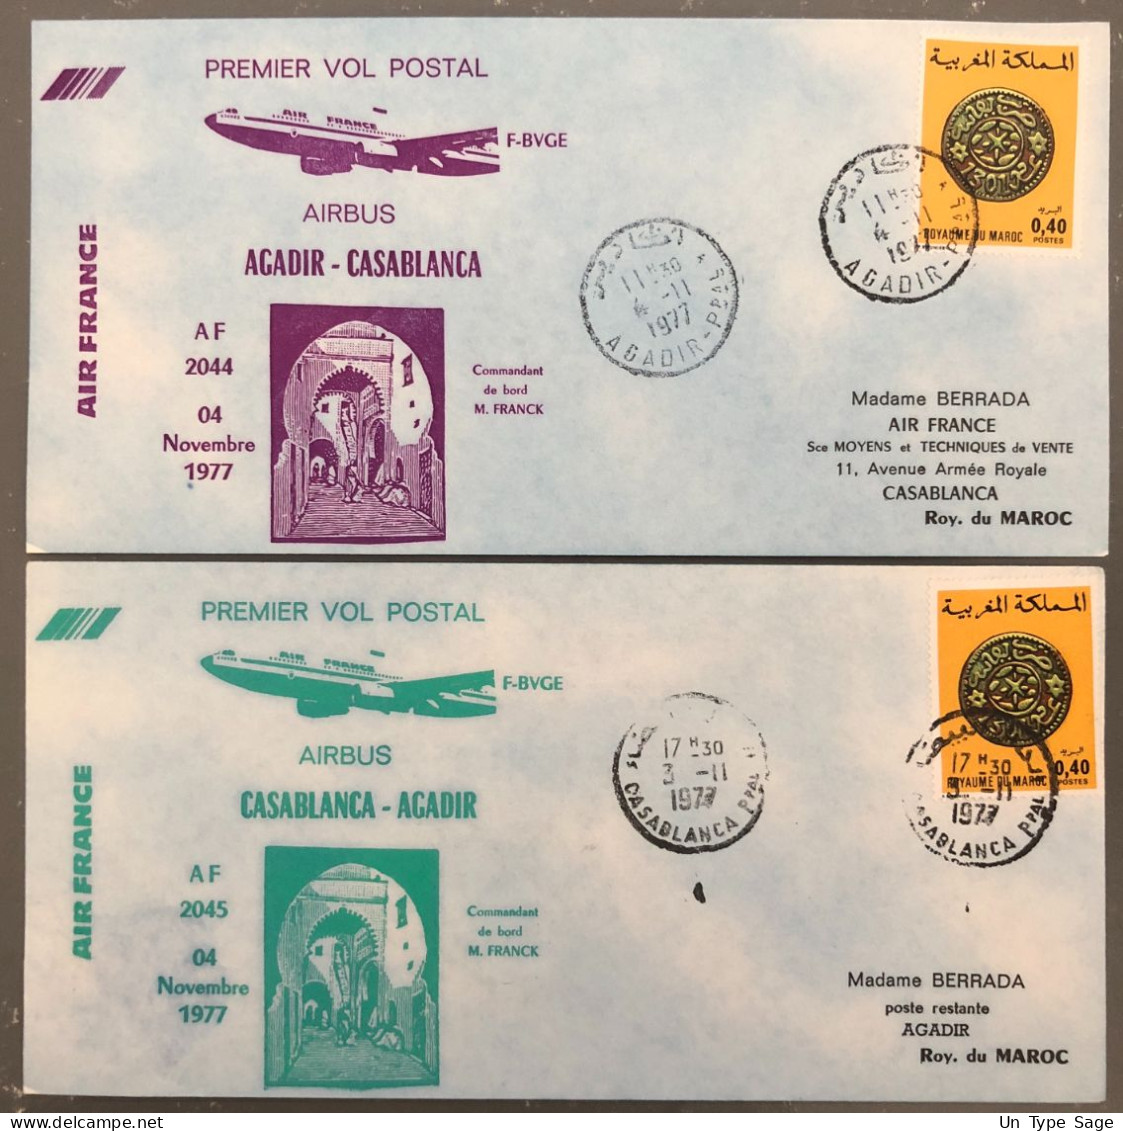 France, Premier Vol (Air France) Casablanca, Agdir, 4.11.1977 - 2 Enveloppes - (B1493) - Premiers Vols